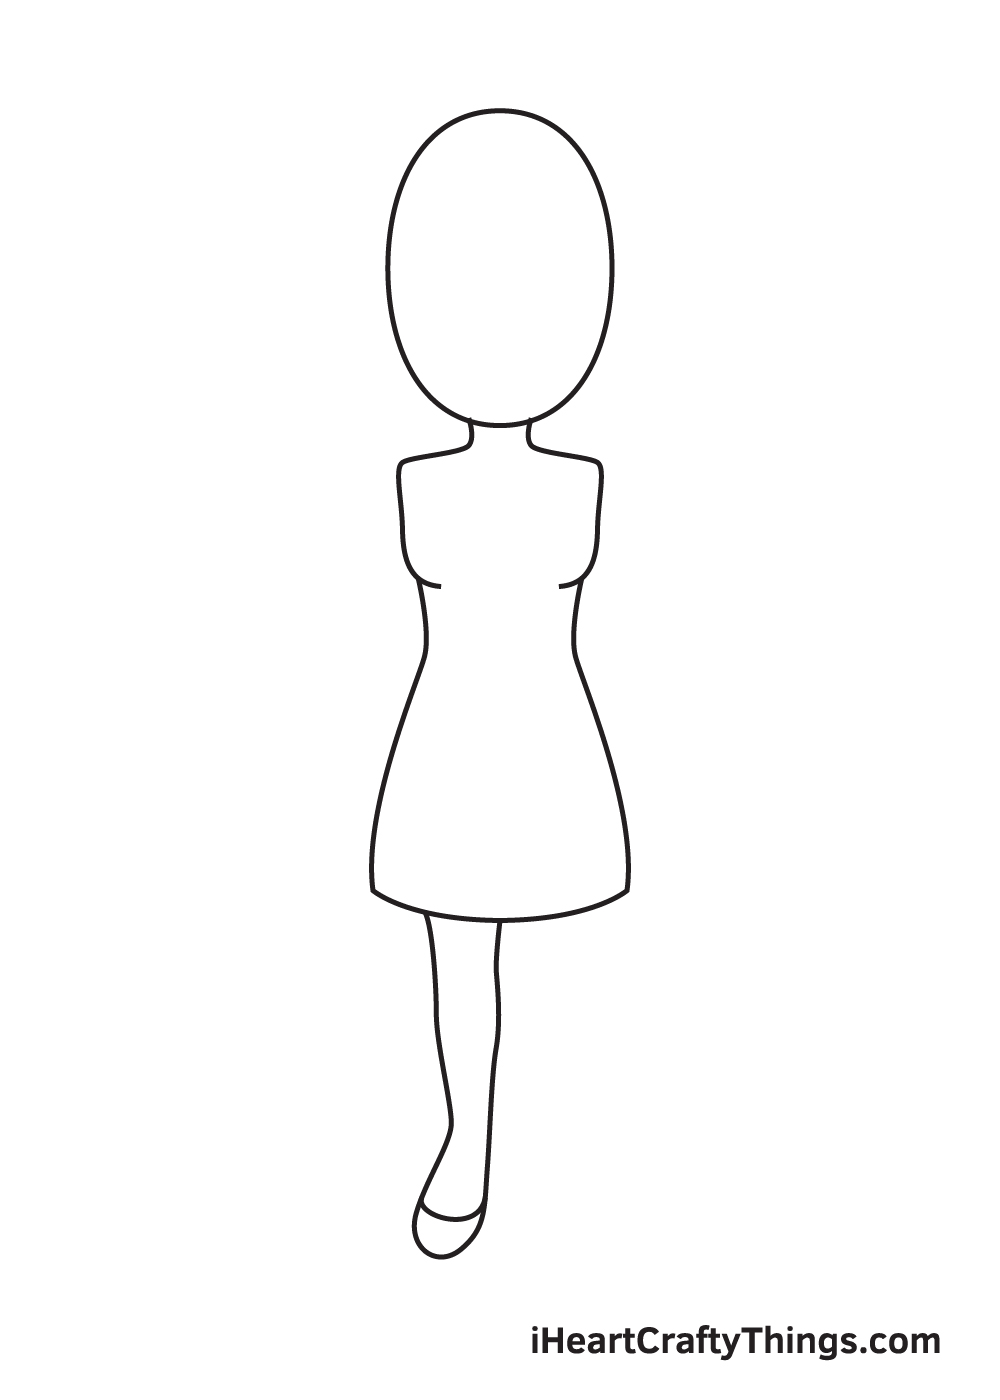 Woman DRAWING – STEP 4 - Hướng dẫn chi tiết cách vẽ cô gái đơn giản với 9 bước cơ bản